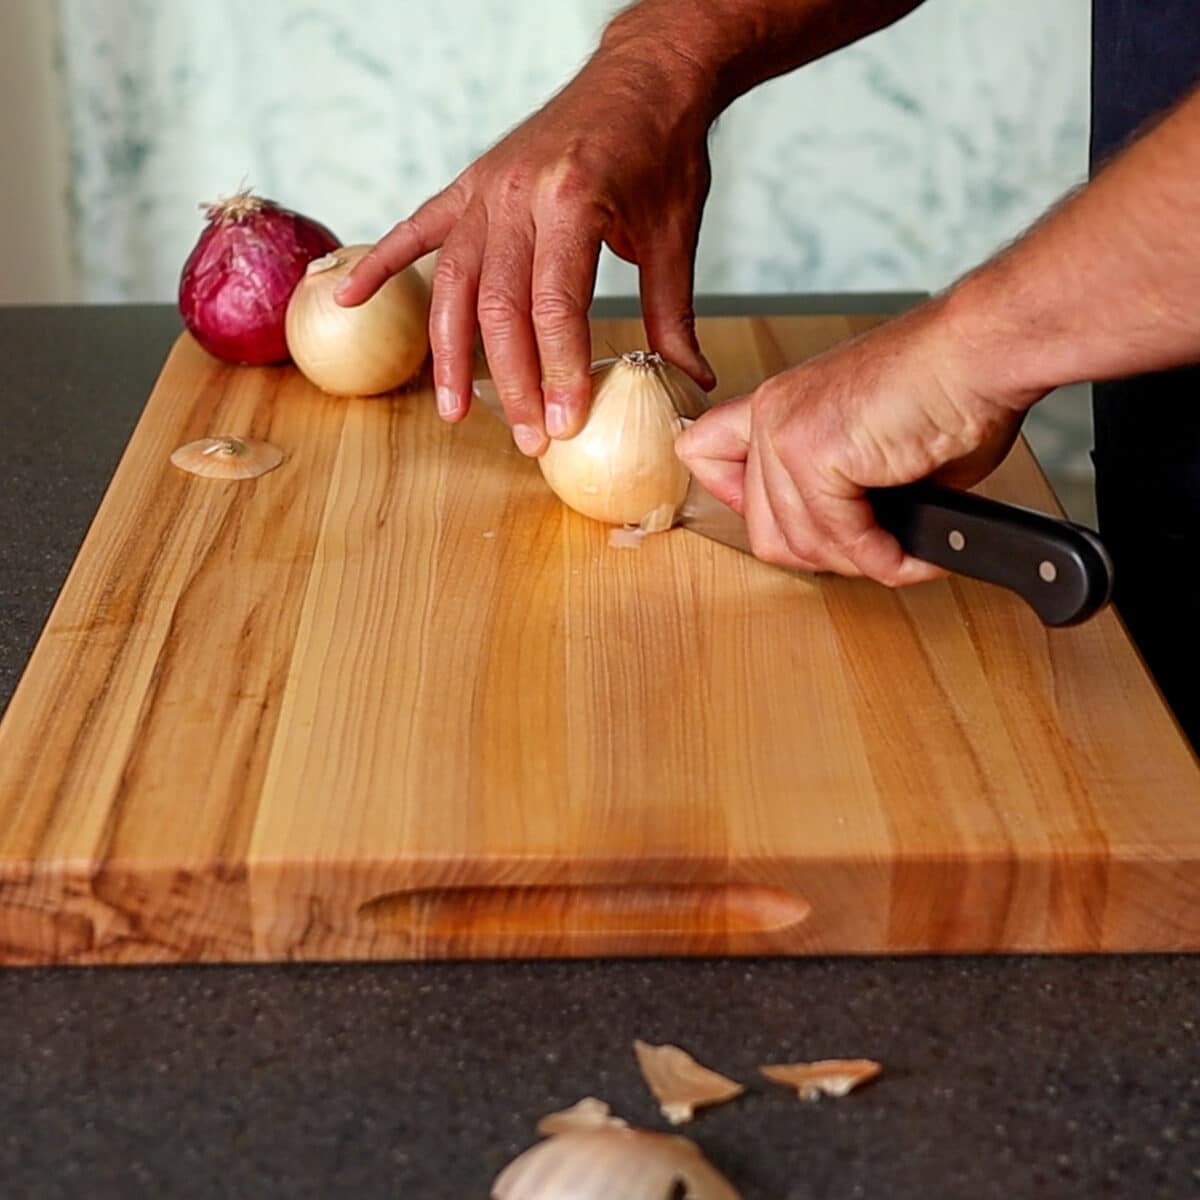 Cutting an onion in half on a cutting board.